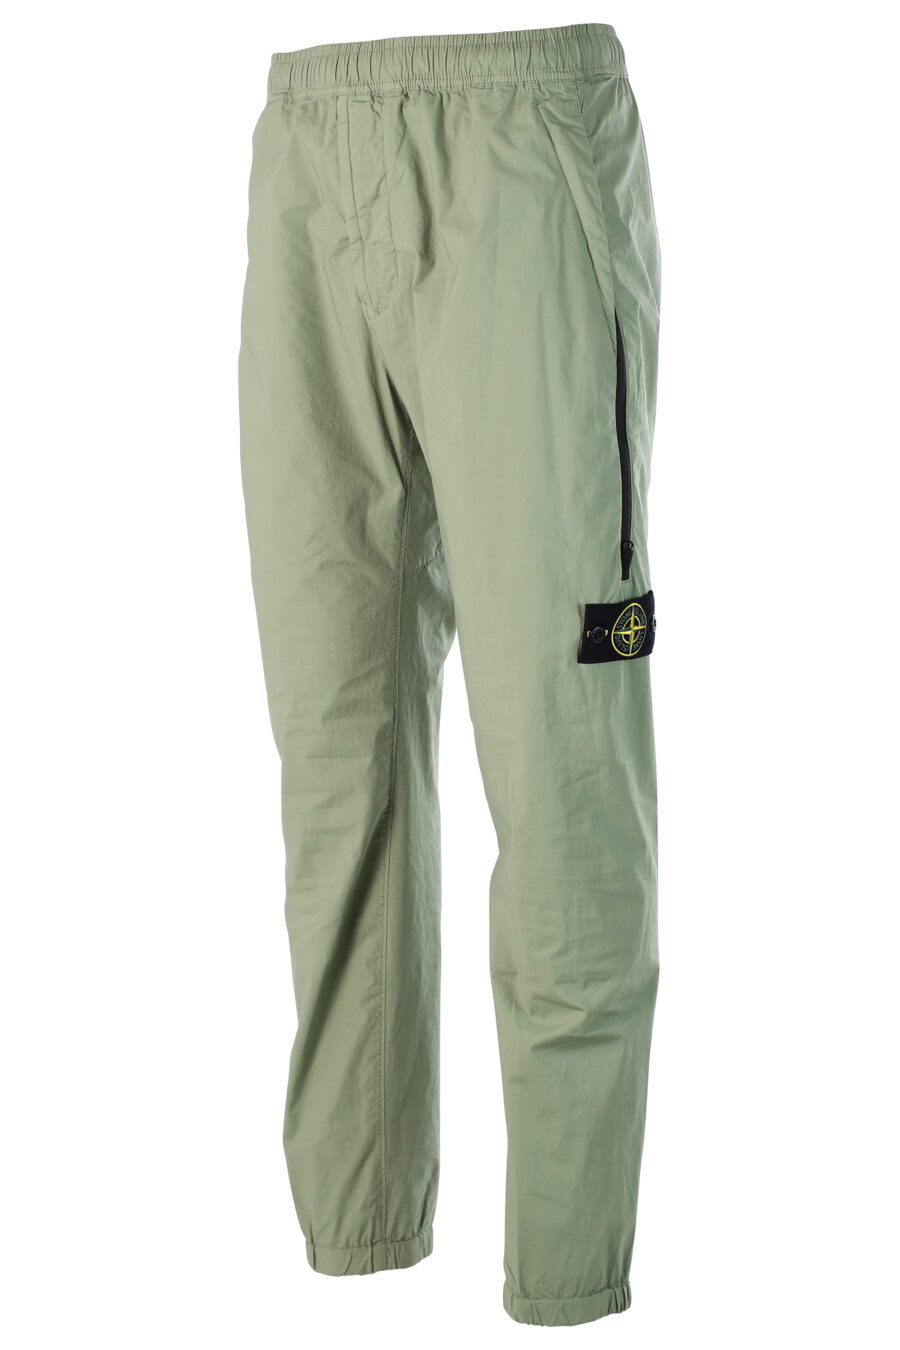 Pantalón verde militar estilo cargo y parche - 8052572549175 2